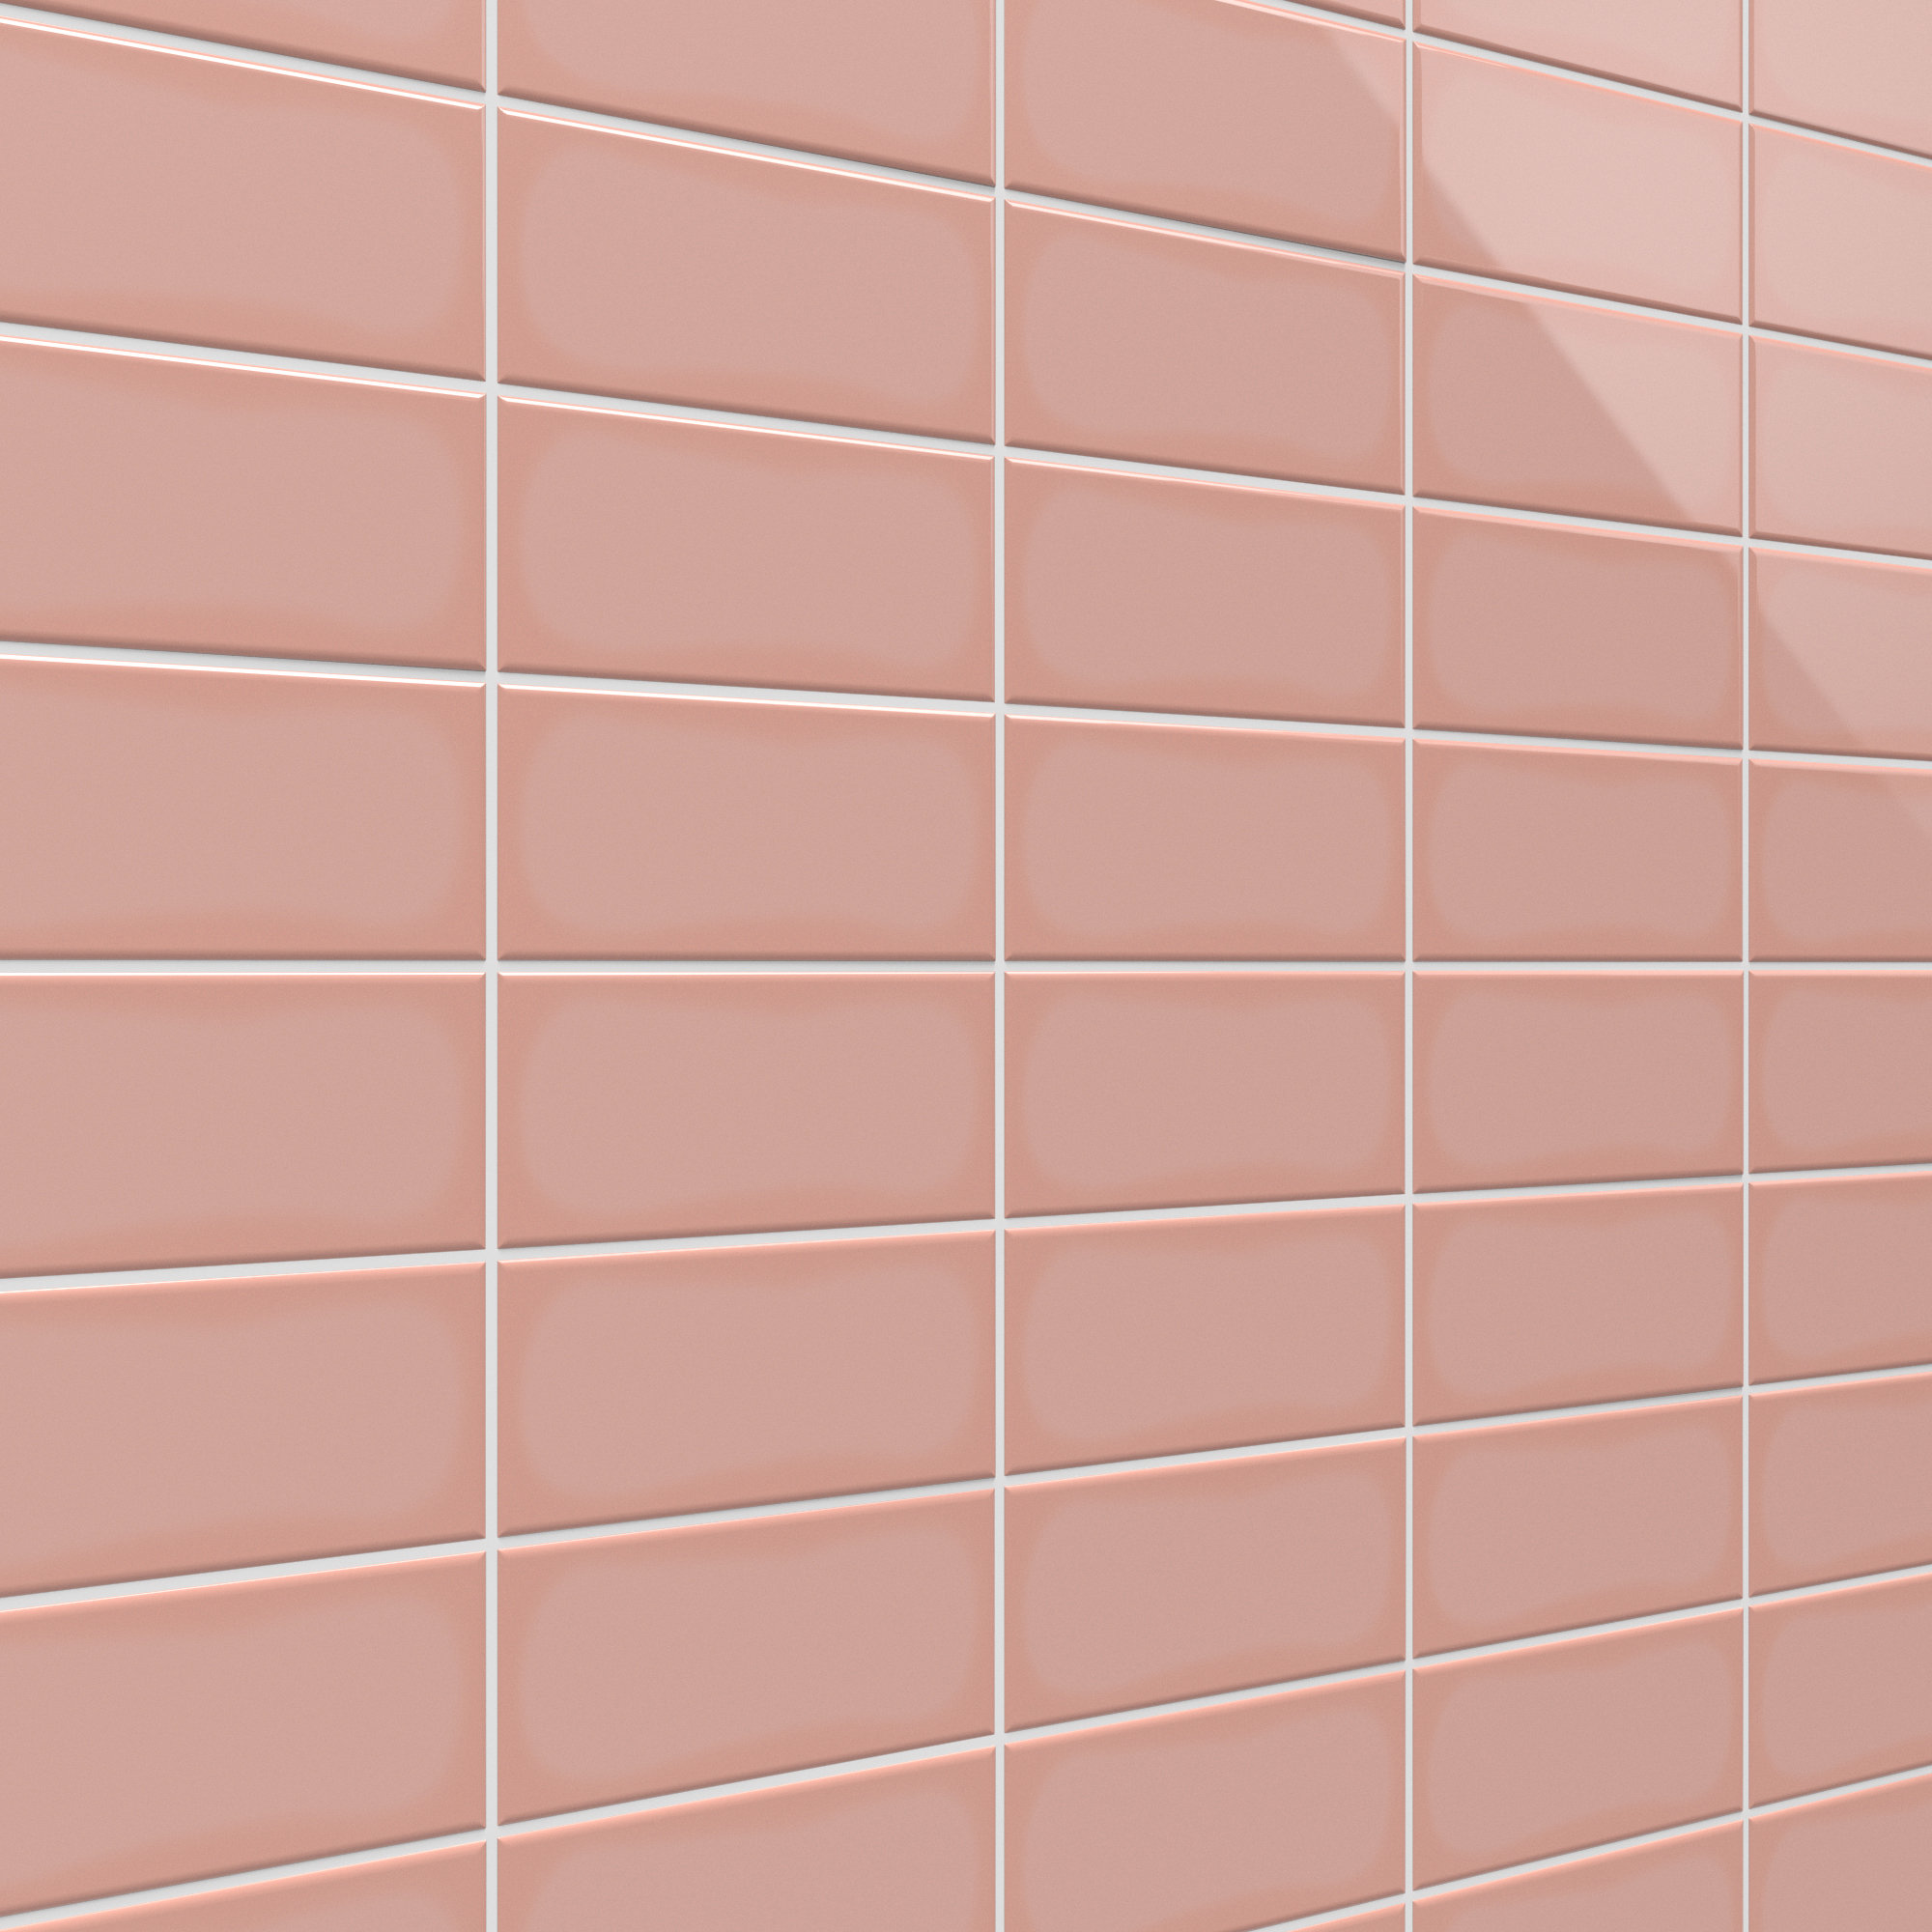 Tile Wall Bathroom Backsplash - Remington Avenue